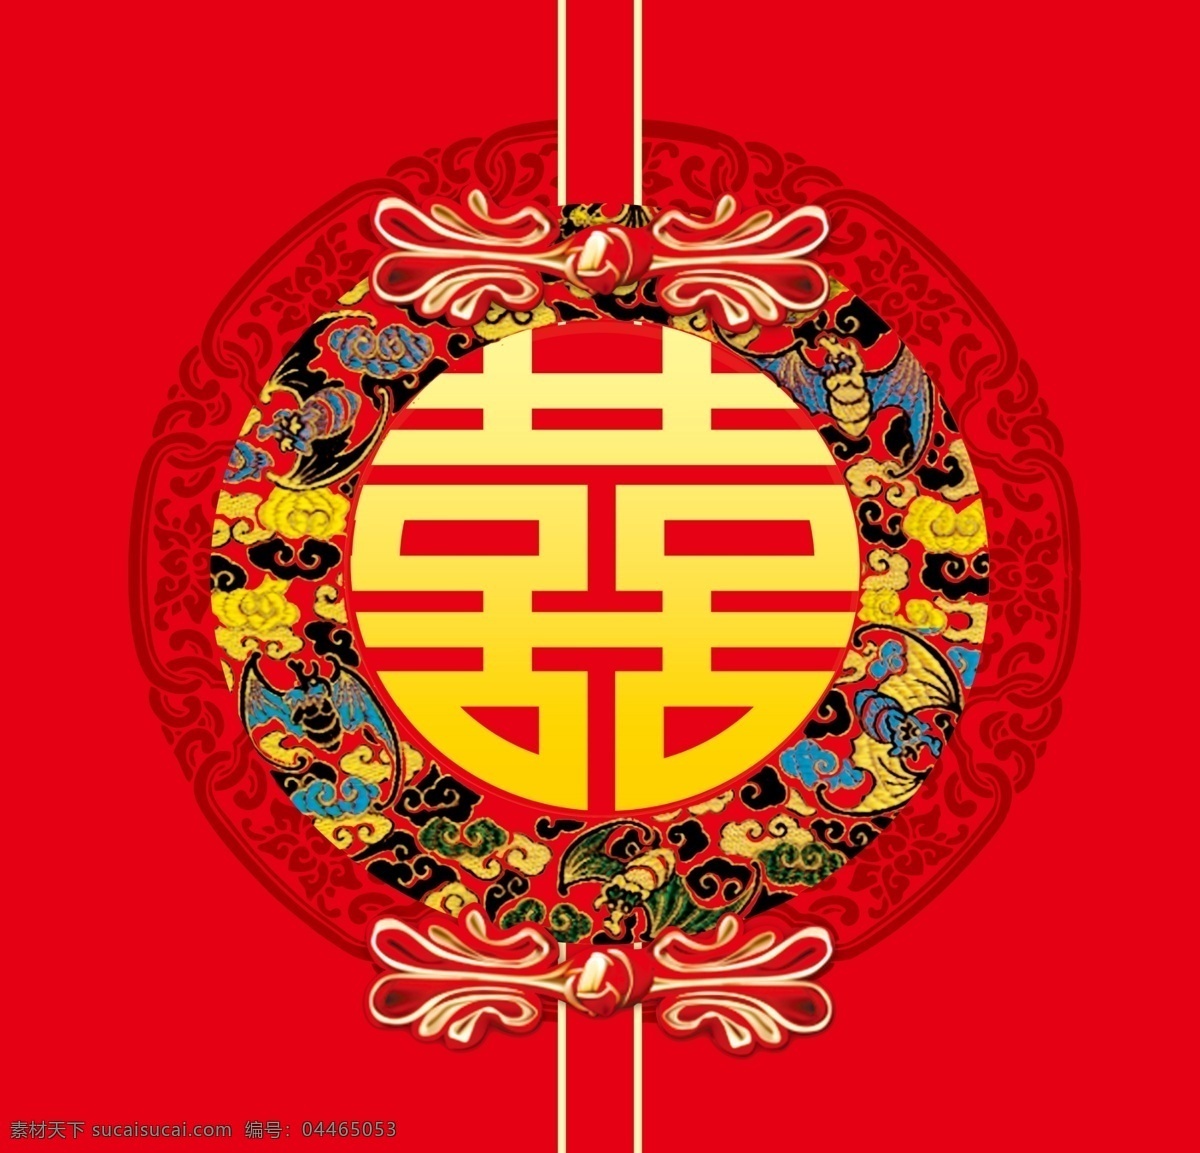 中式婚礼背景 盘扣 圆形喜字 红色背景 方形图案 红色婚礼 中式婚礼 喜字元素 中国传统花纹 分层